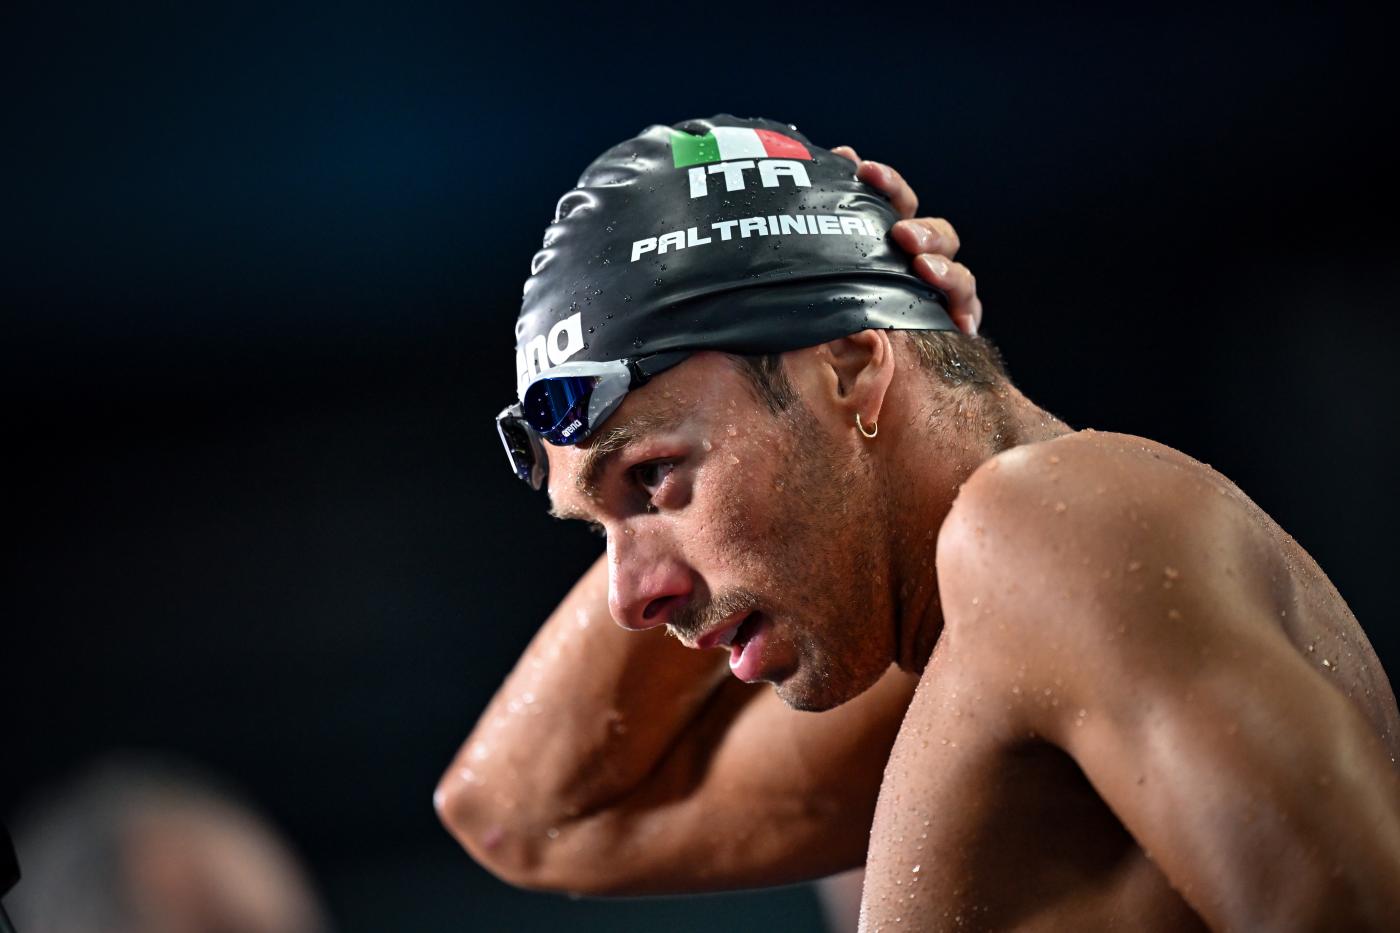 Nuoto, quando gareggia Gregorio Paltrinieri agli Europei: i giorni precisi, programma, orari, tv